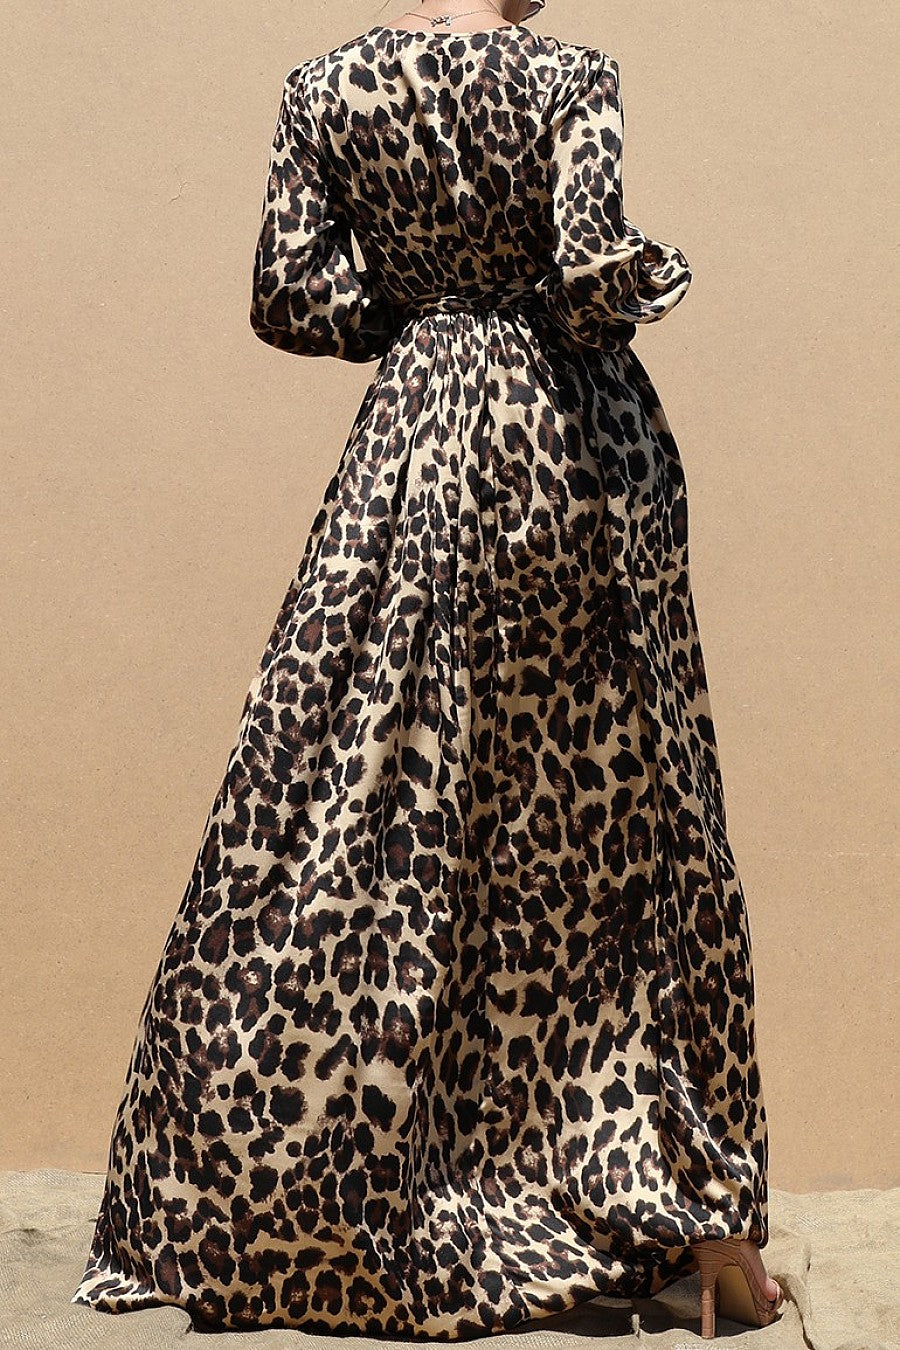 The Leopard Satin Maxi Dress